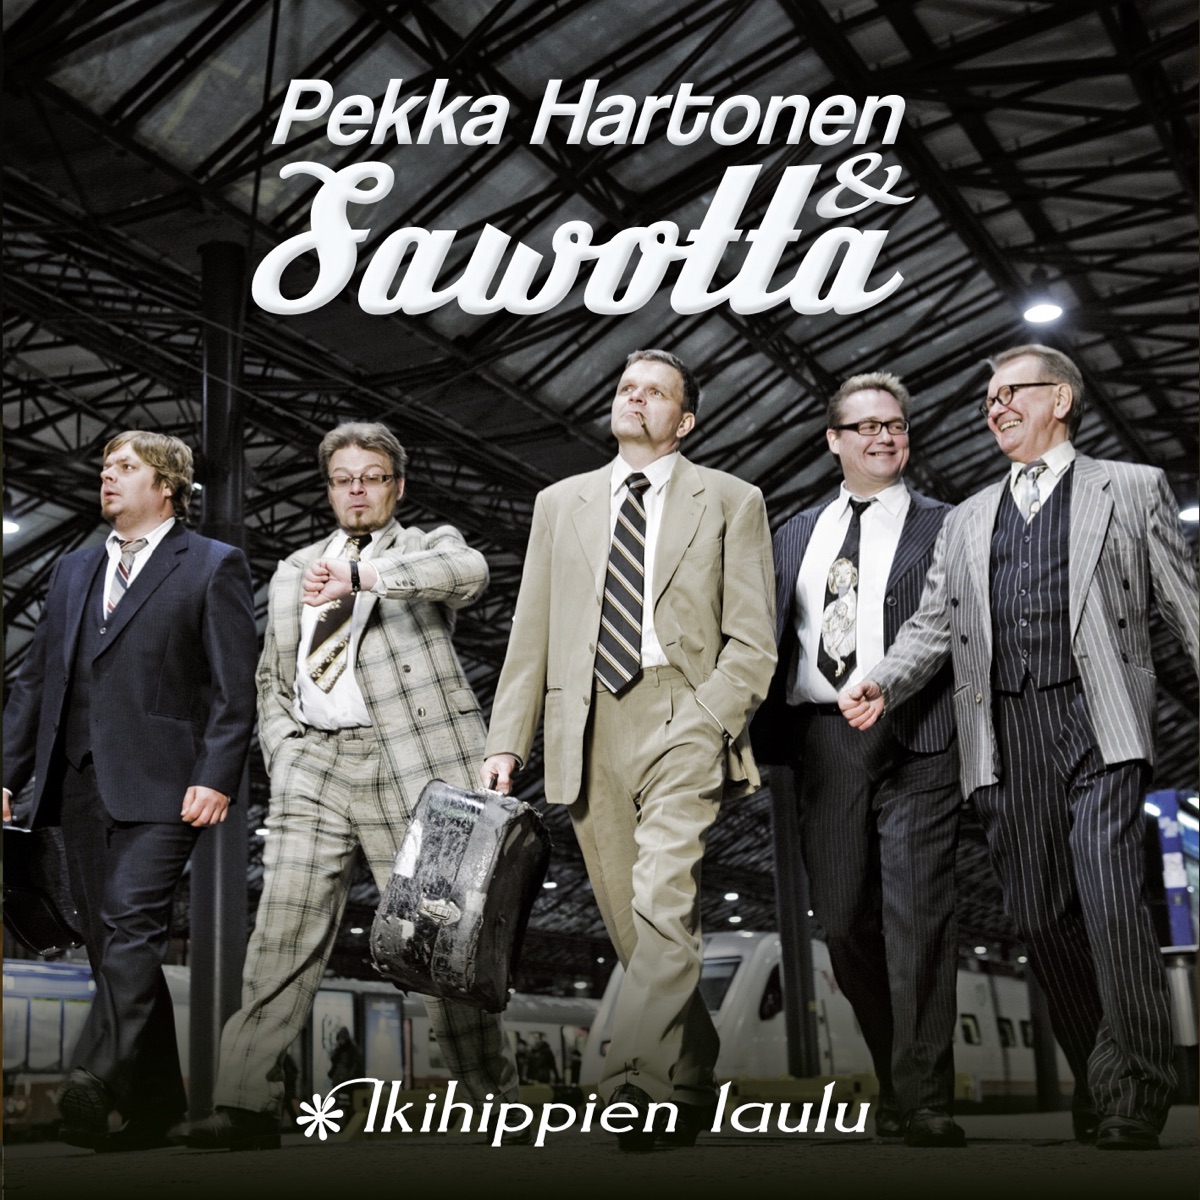 Ikihippien Laulu - Single - Album by Pekka Hartonen & Sawotta - Apple Music